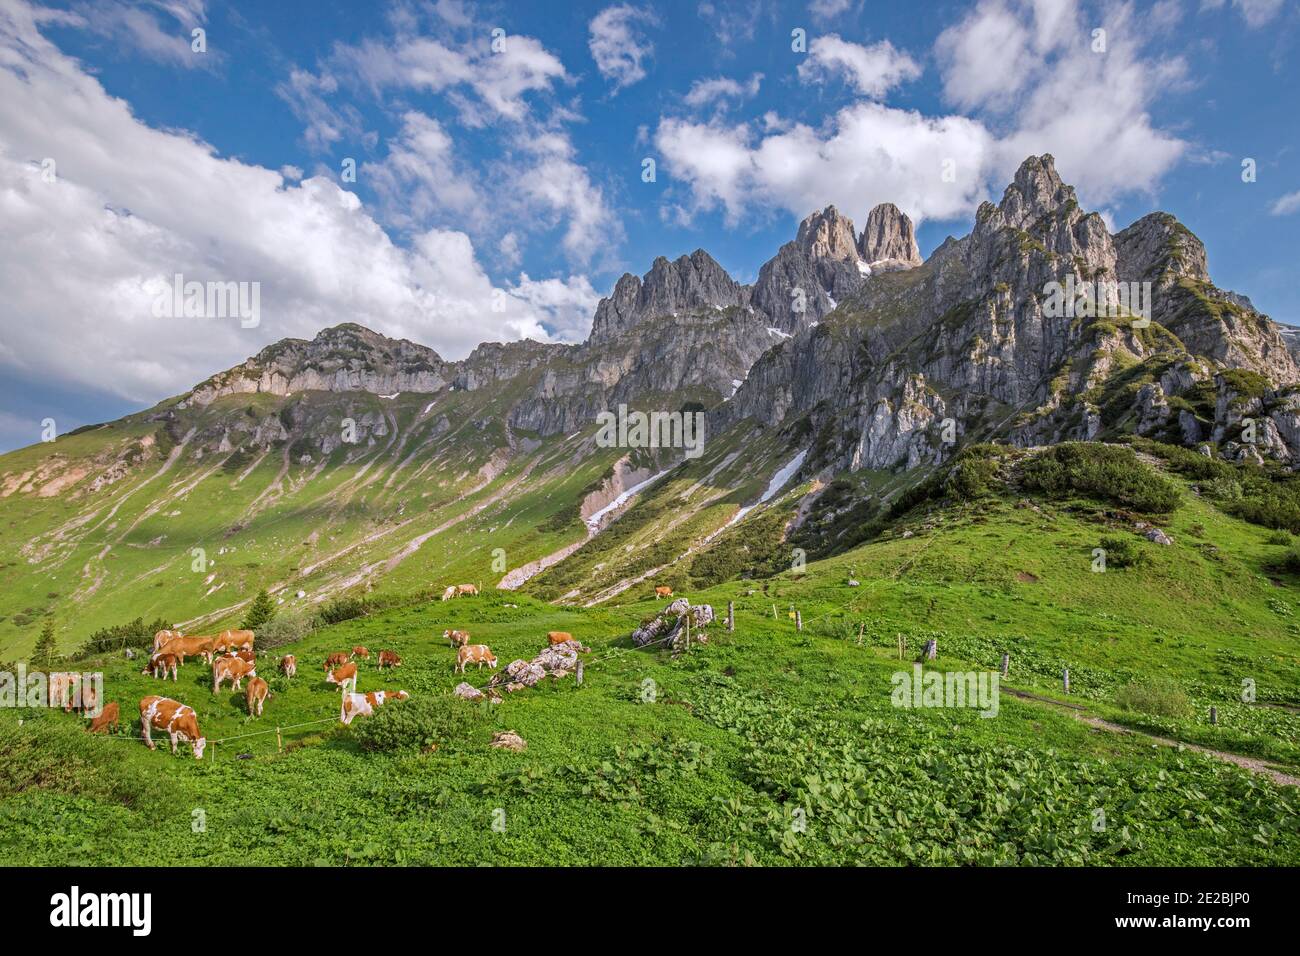 Vaches alpines et montagne Große Bischofsmütze / Bischofsmuetze, chaîne de Gosaukamm, montagnes de Dachstein, haute-Styrie / Steiermark, Autriche Banque D'Images